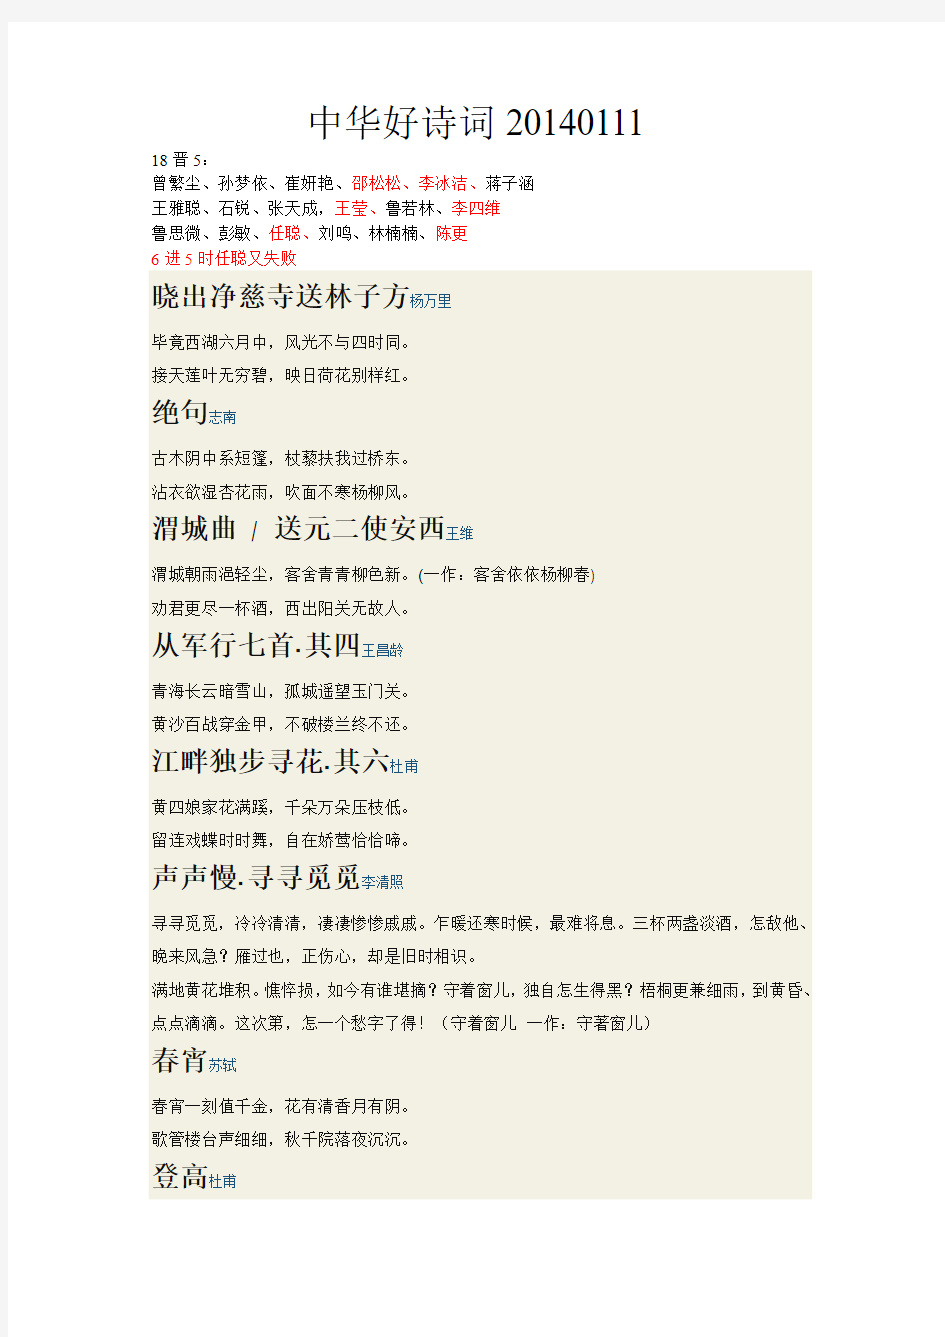 中华好诗词20140111第一季复活涉及诗词